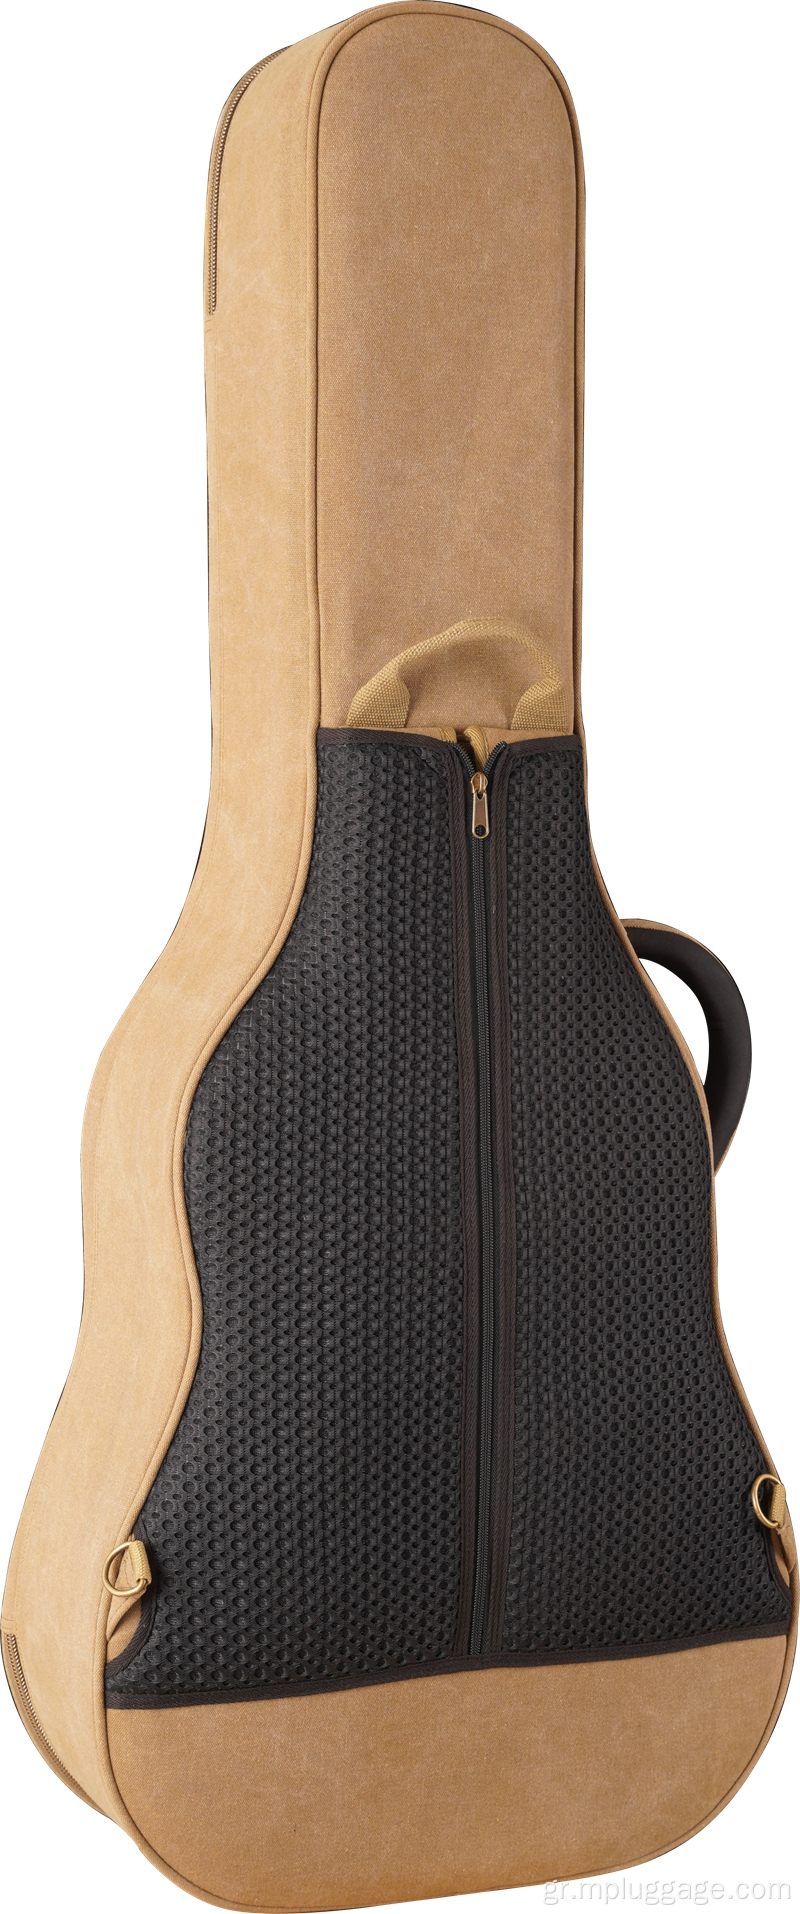 Τσάντα φίλτρου υγρού για κιθάρα με υψηλή ποιότητα